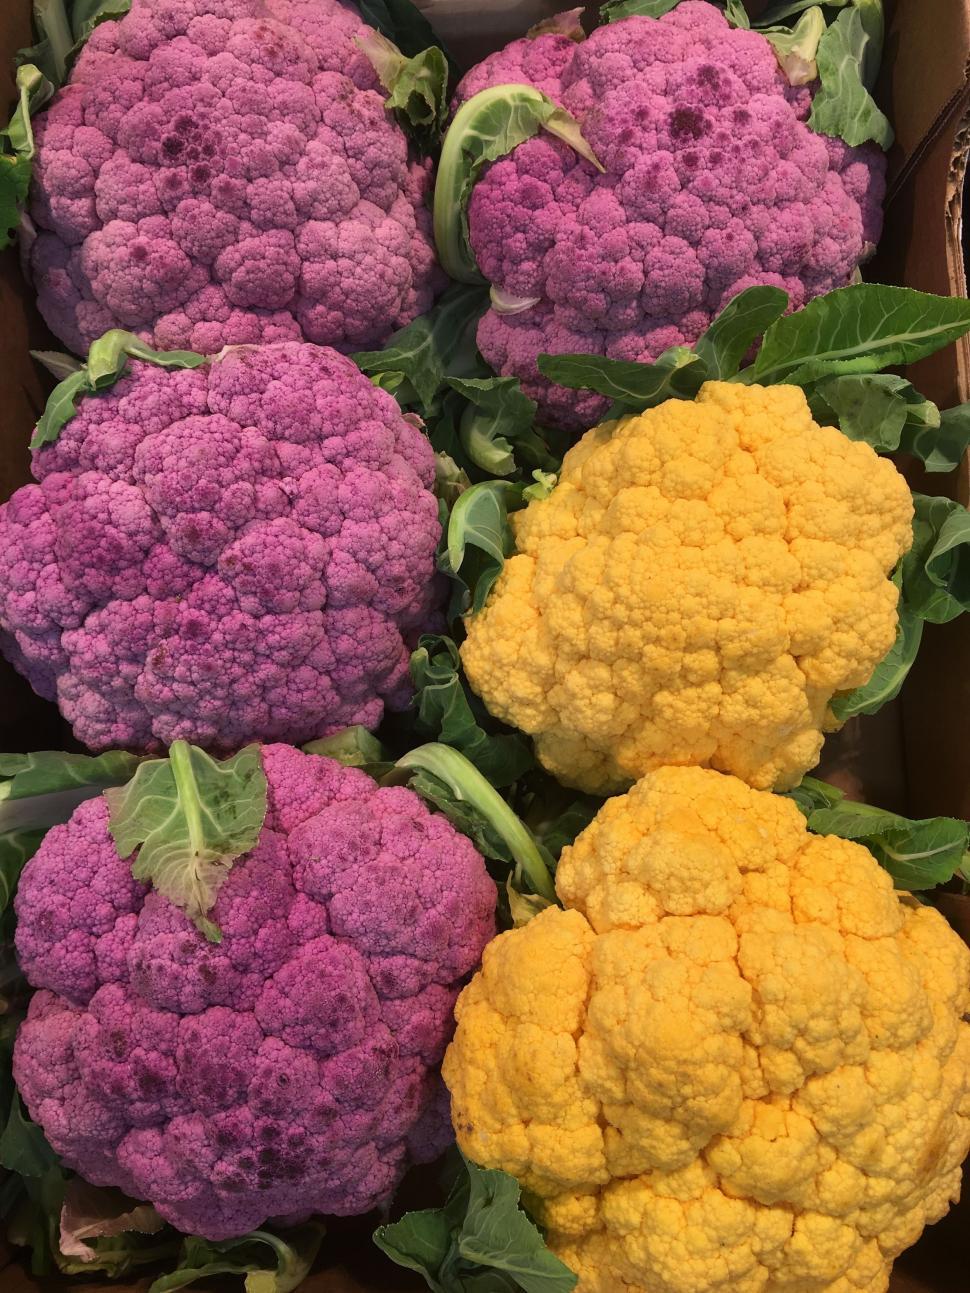 Free Image of Purple and Yellow Cauliflower 